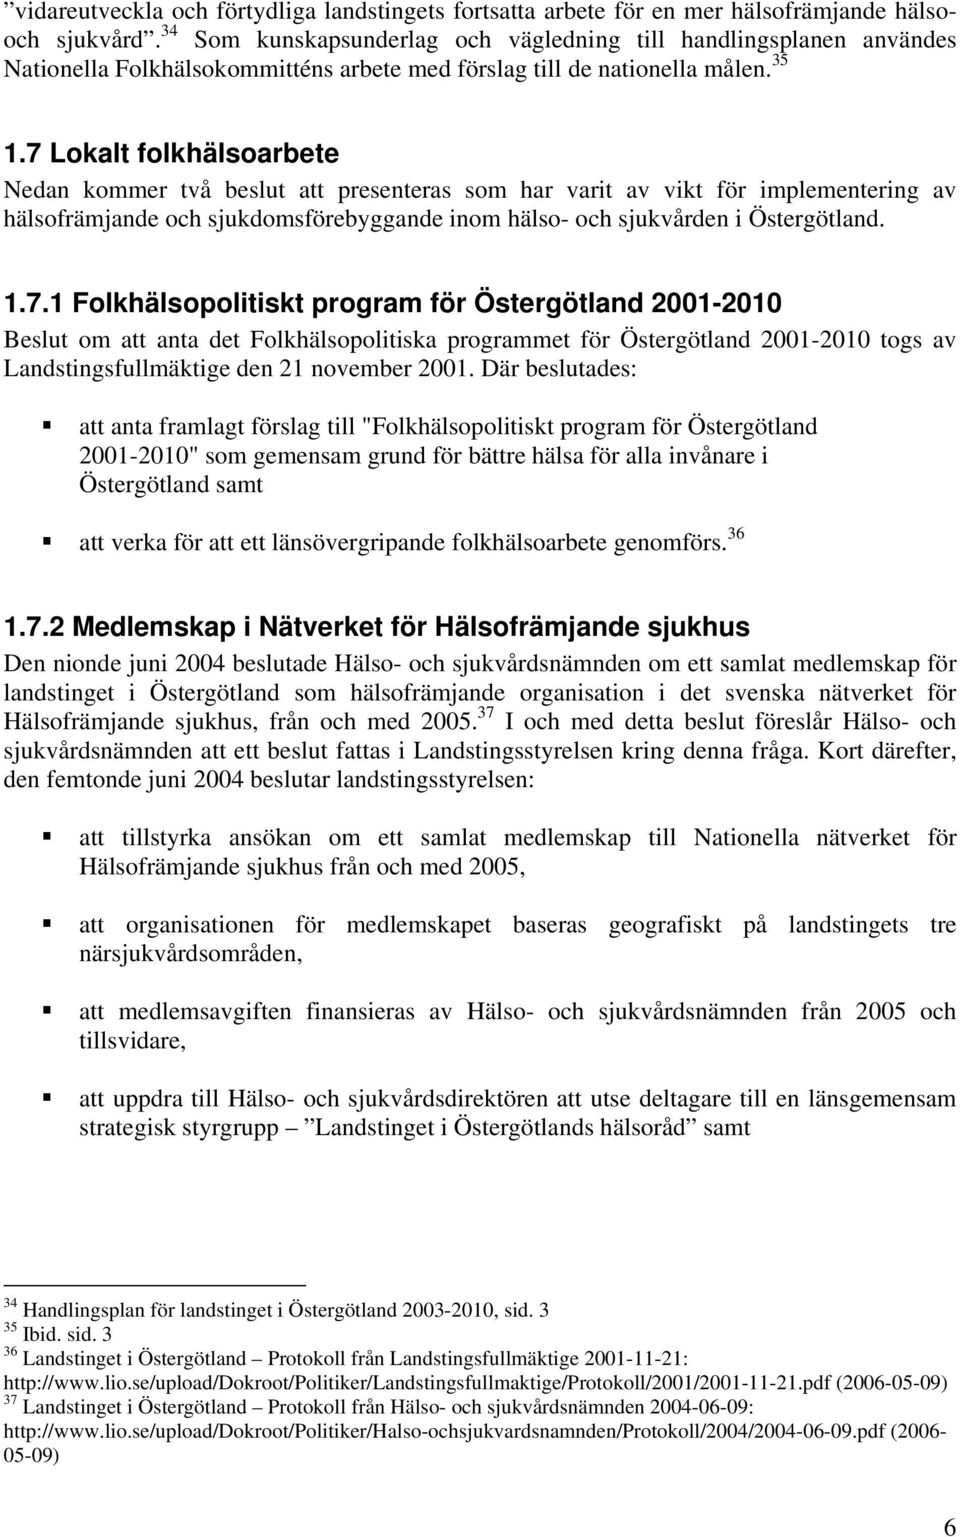 7 Lokalt folkhälsoarbete Nedan kommer två beslut att presenteras som har varit av vikt för implementering av hälsofrämjande och sjukdomsförebyggande inom hälso- och sjukvården i Östergötland. 1.7.1 Folkhälsopolitiskt program för Östergötland 2001-2010 Beslut om att anta det Folkhälsopolitiska programmet för Östergötland 2001-2010 togs av Landstingsfullmäktige den 21 november 2001.